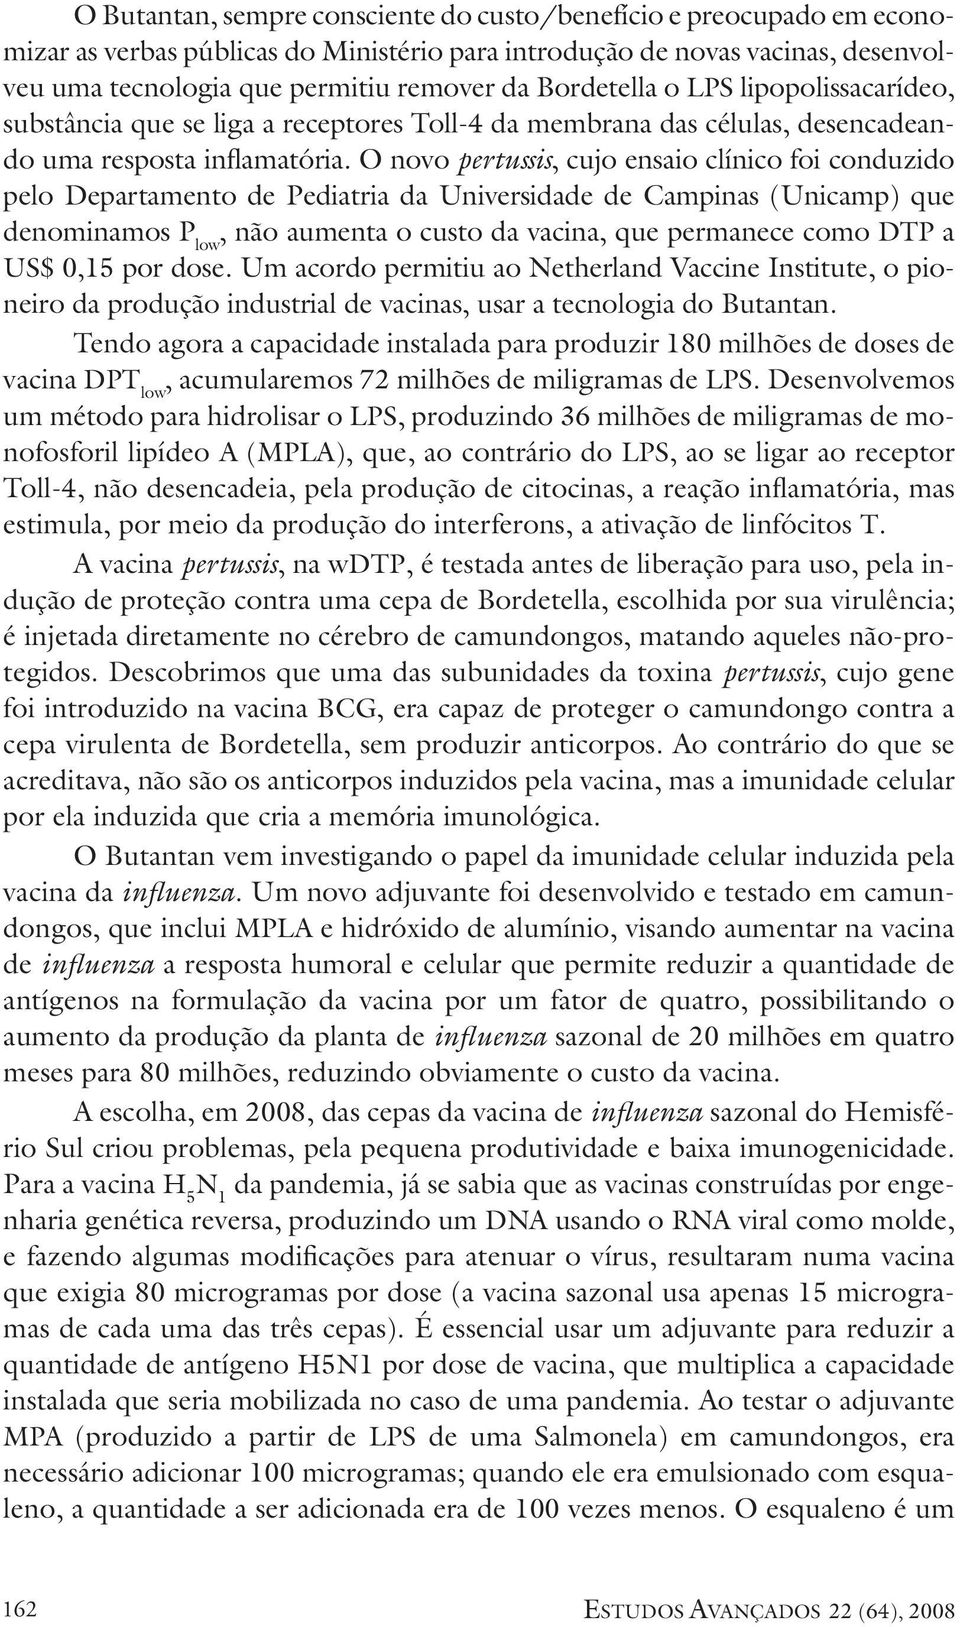 O novo pertussis, cujo ensaio clínico foi conduzido pelo Departamento de Pediatria da Universidade de Campinas (Unicamp) que denominamos P low, não aumenta o custo da vacina, que permanece como DTP a